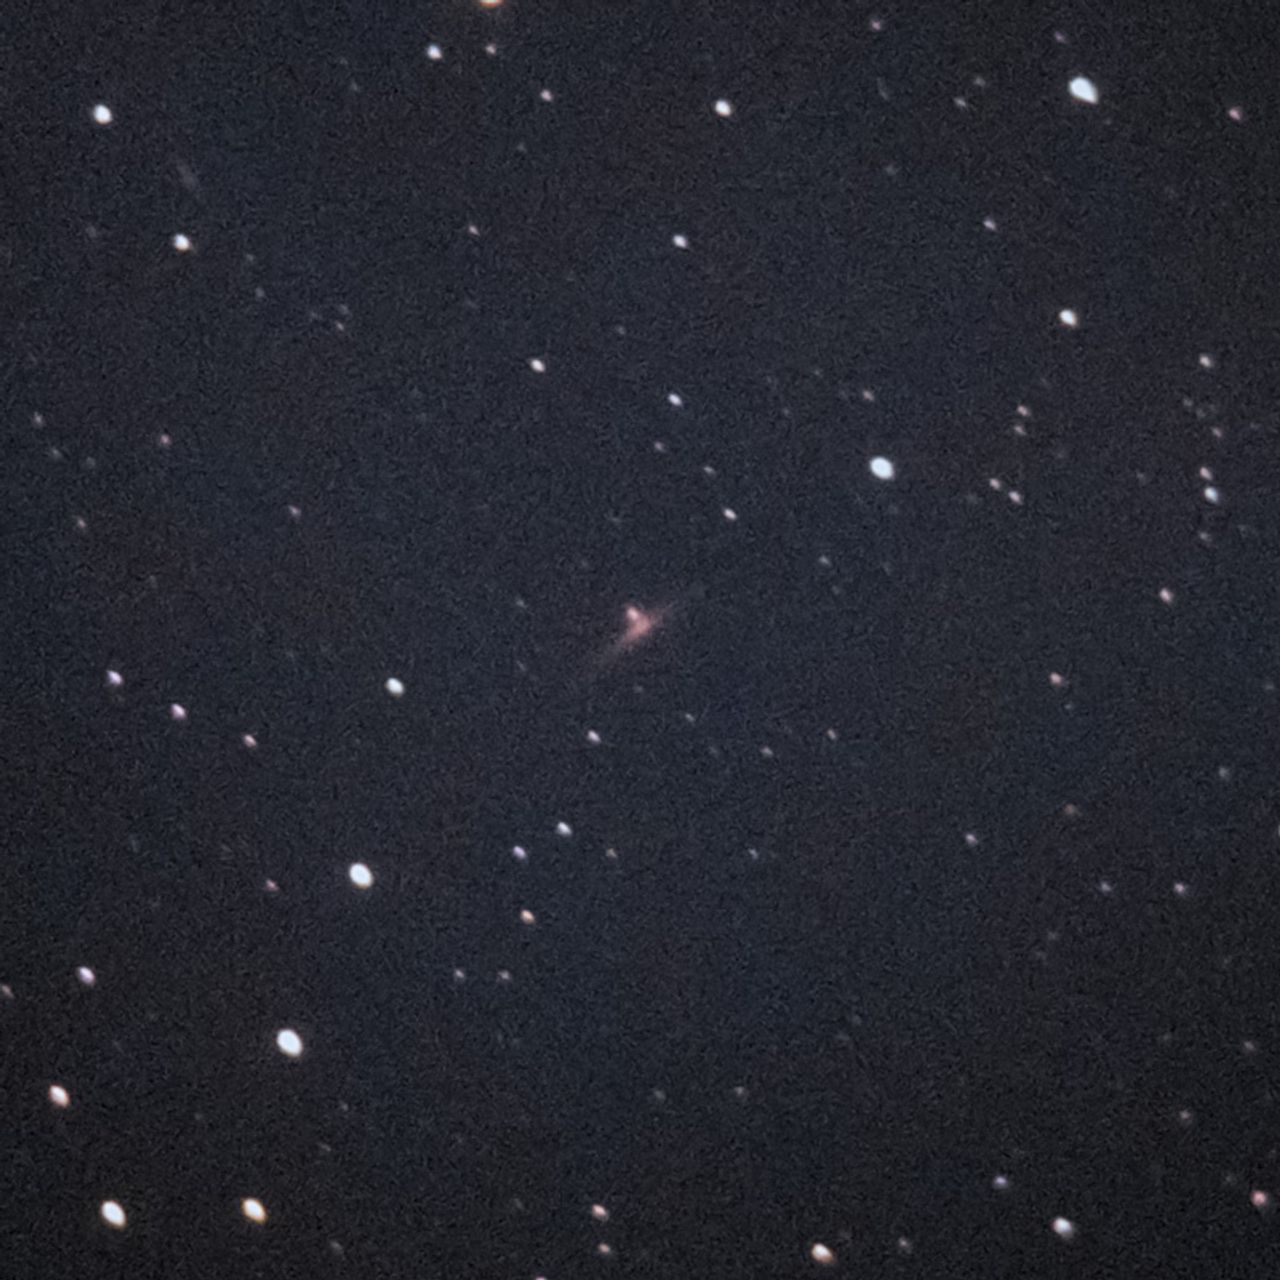 NGC1888